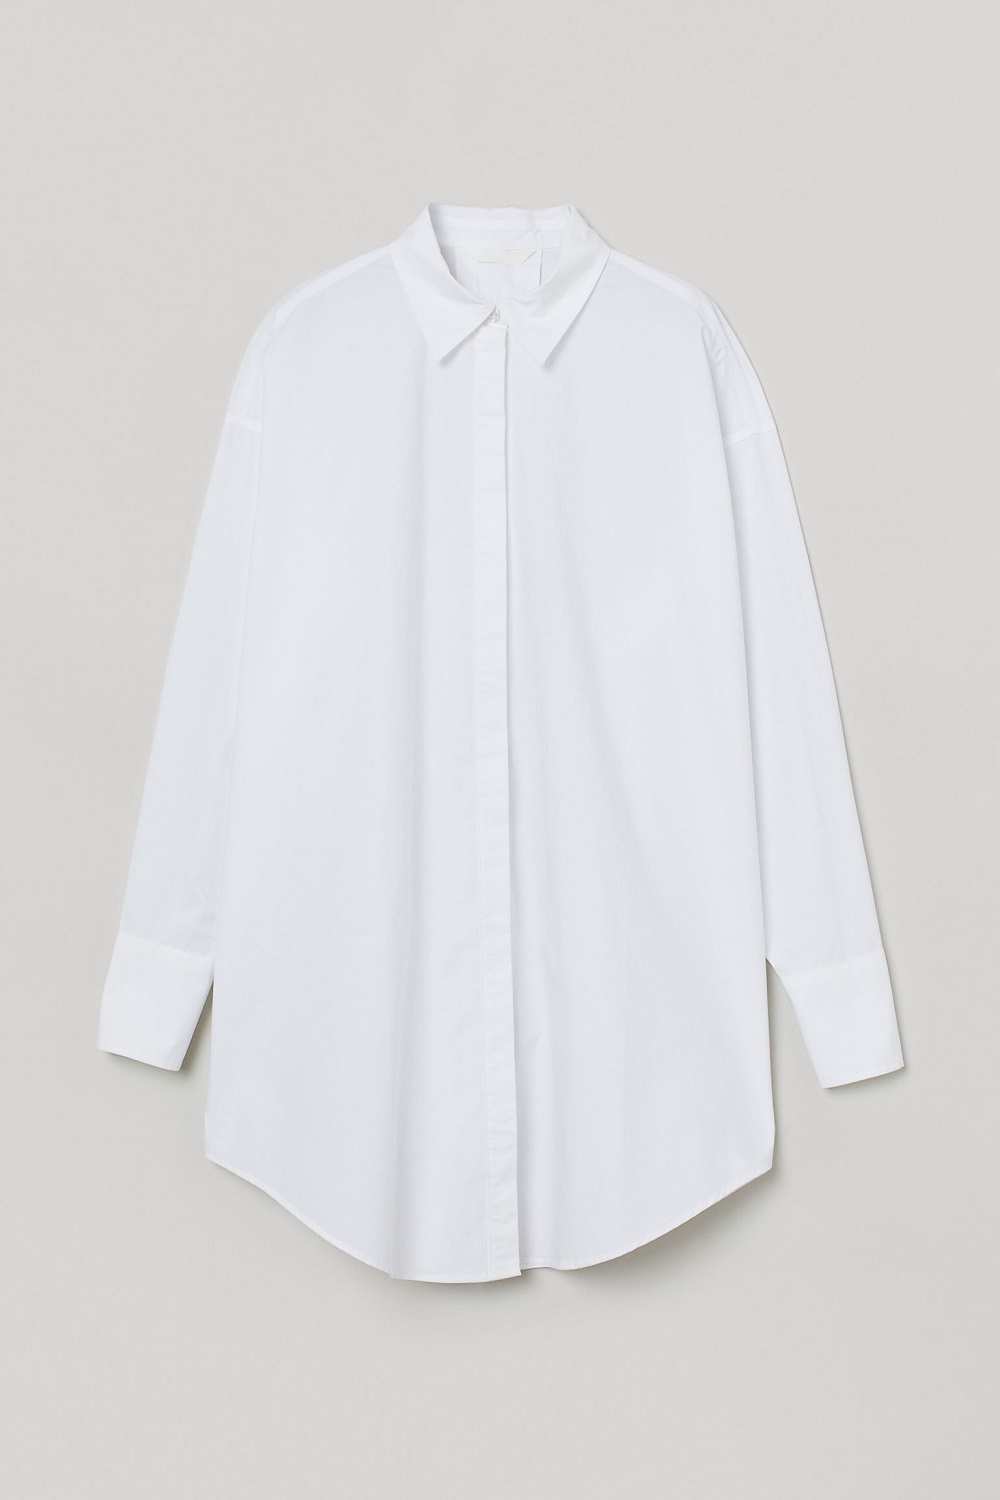 H&M bijela košulja proljeće 2021.